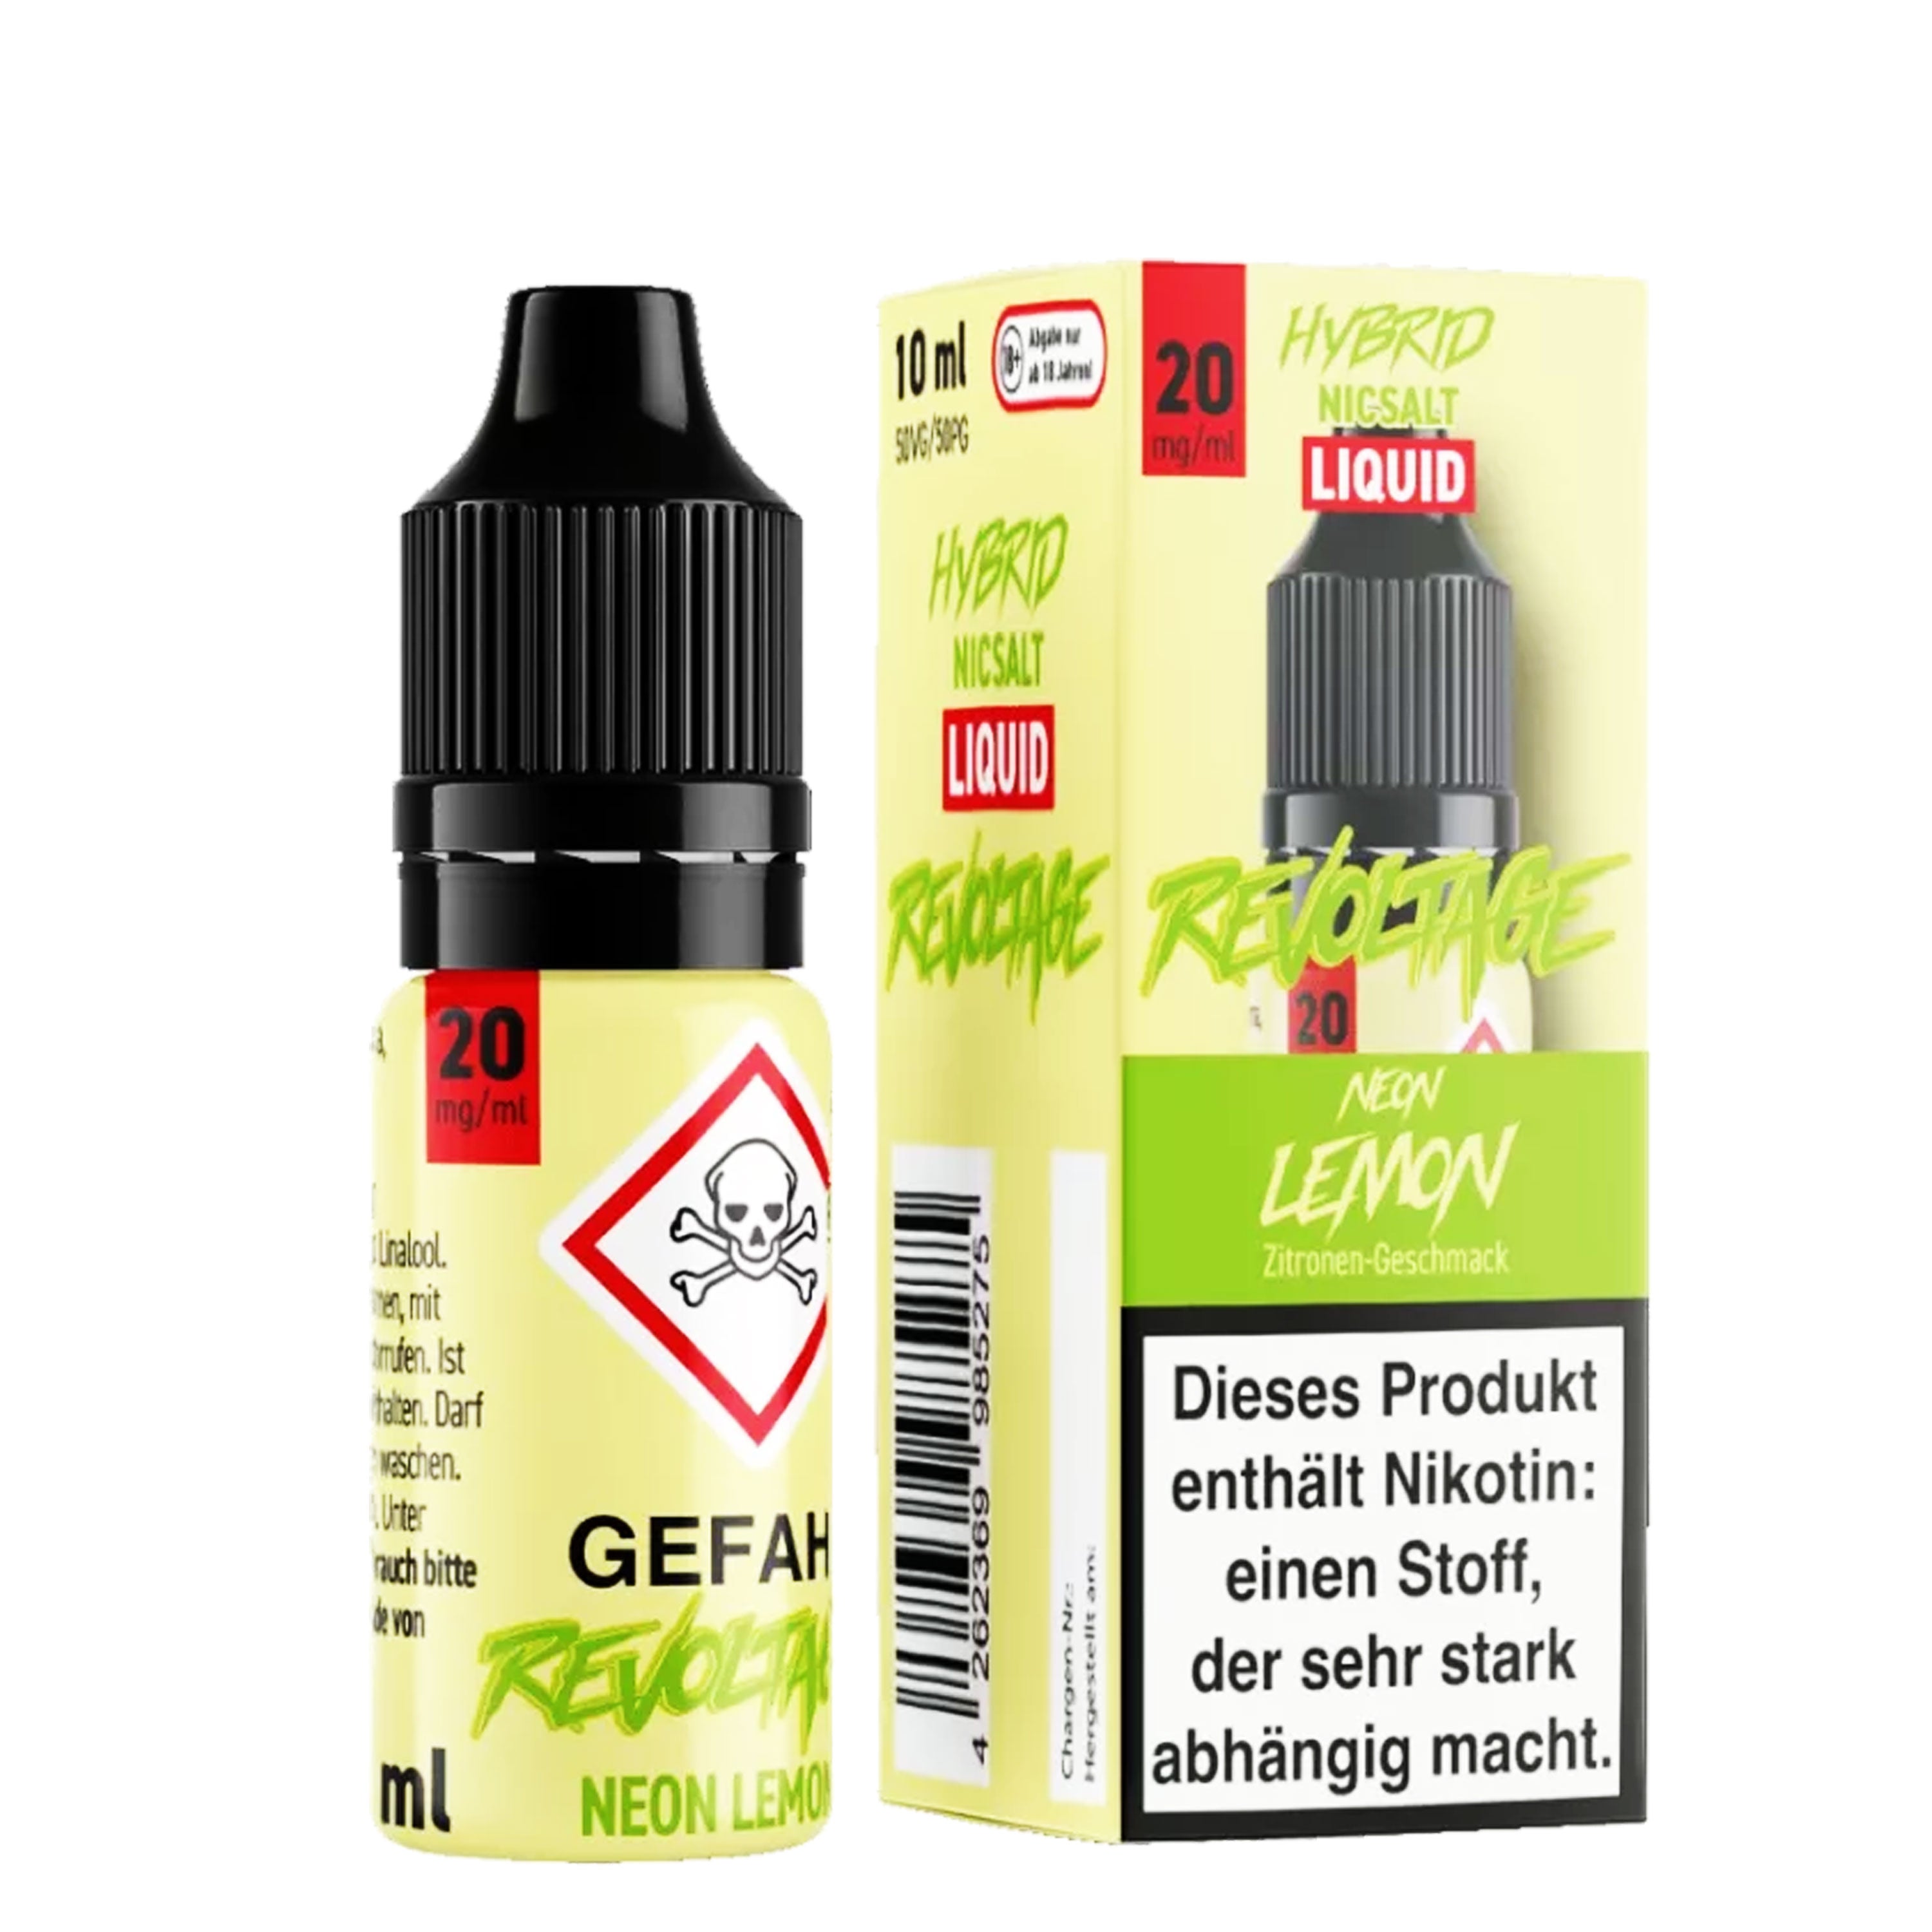 Revoltage - Neon Lemon - Hybrid Nikotinsalz Liquid (10 ml)